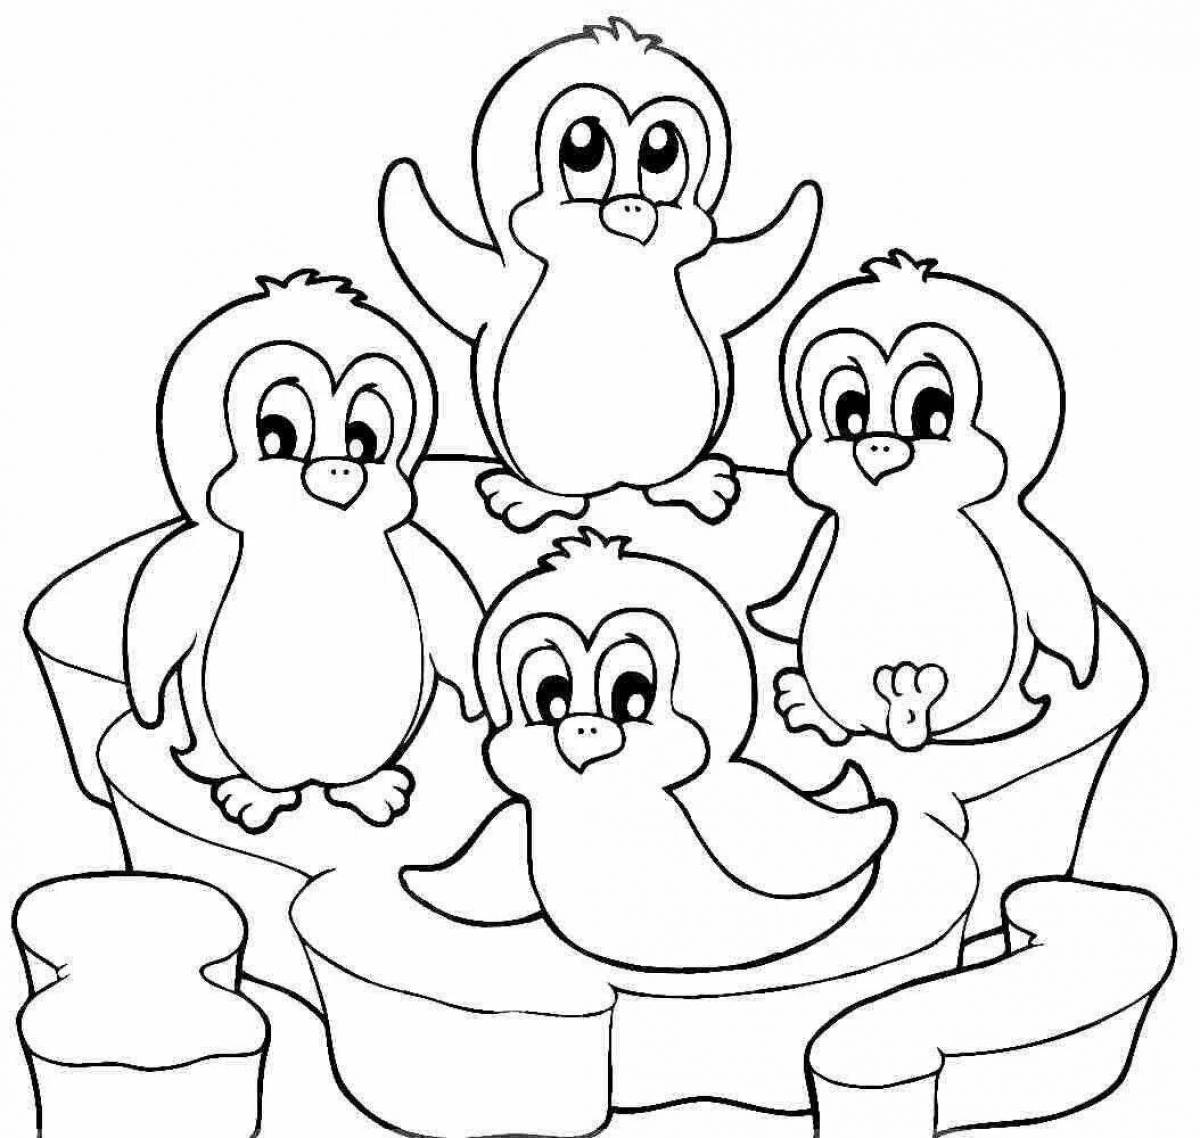 Joyful penguin coloring book